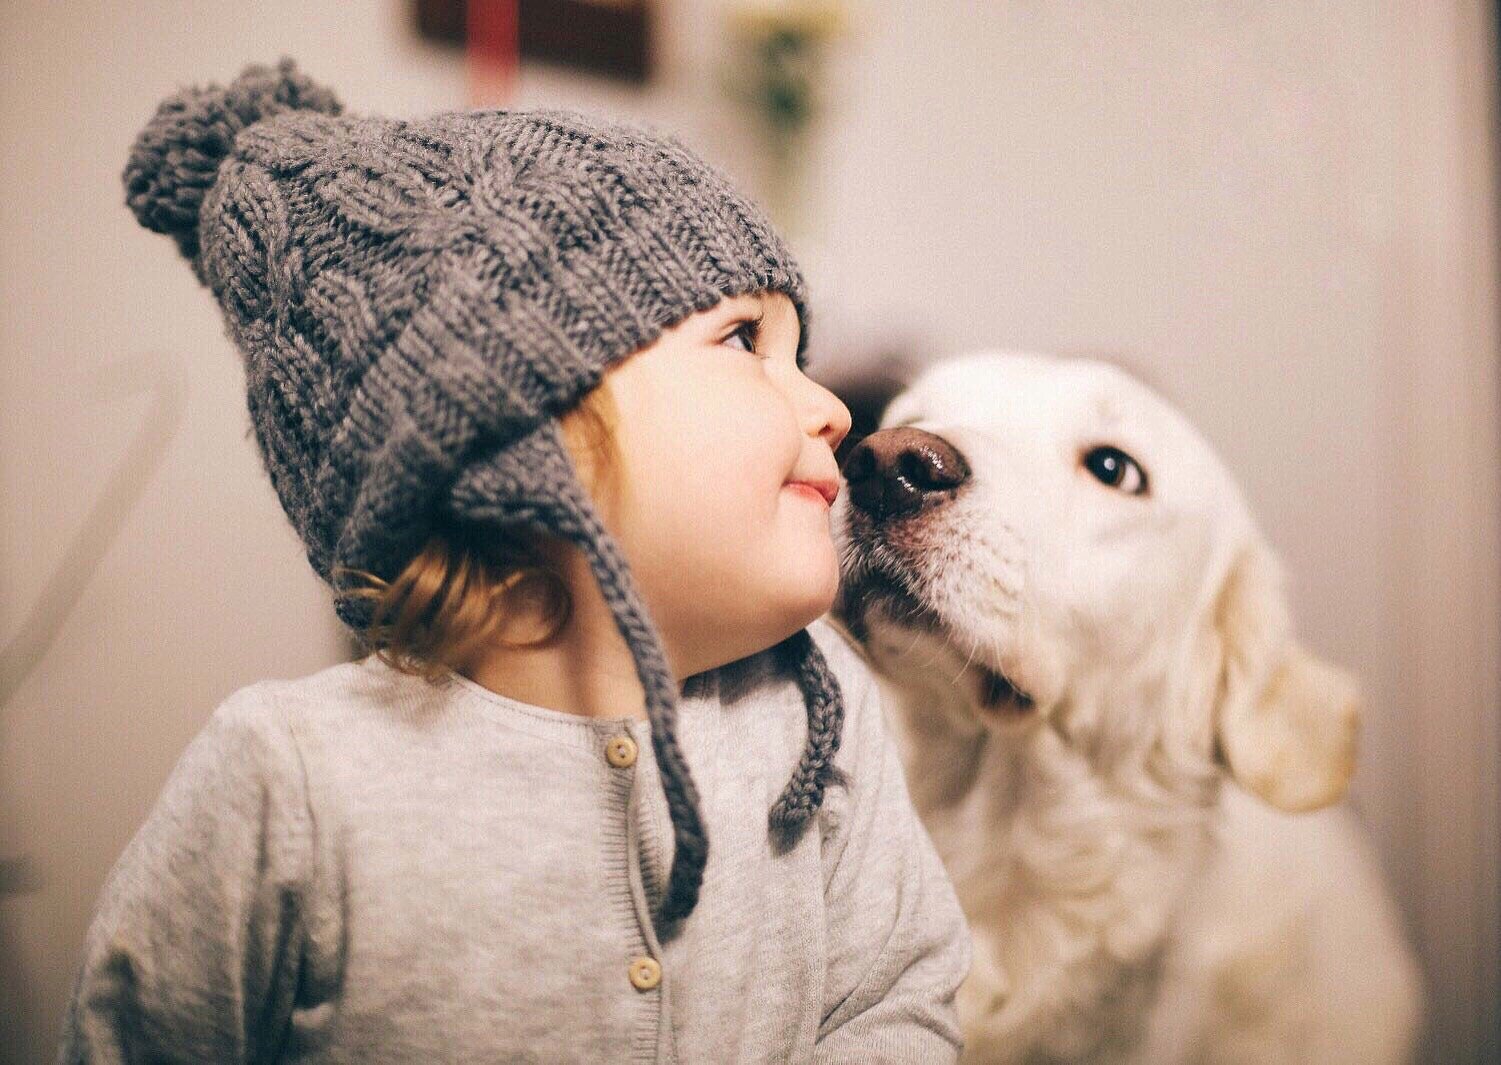 Criança olhando para o lado enquanto cachorro está cheirando seu rosto